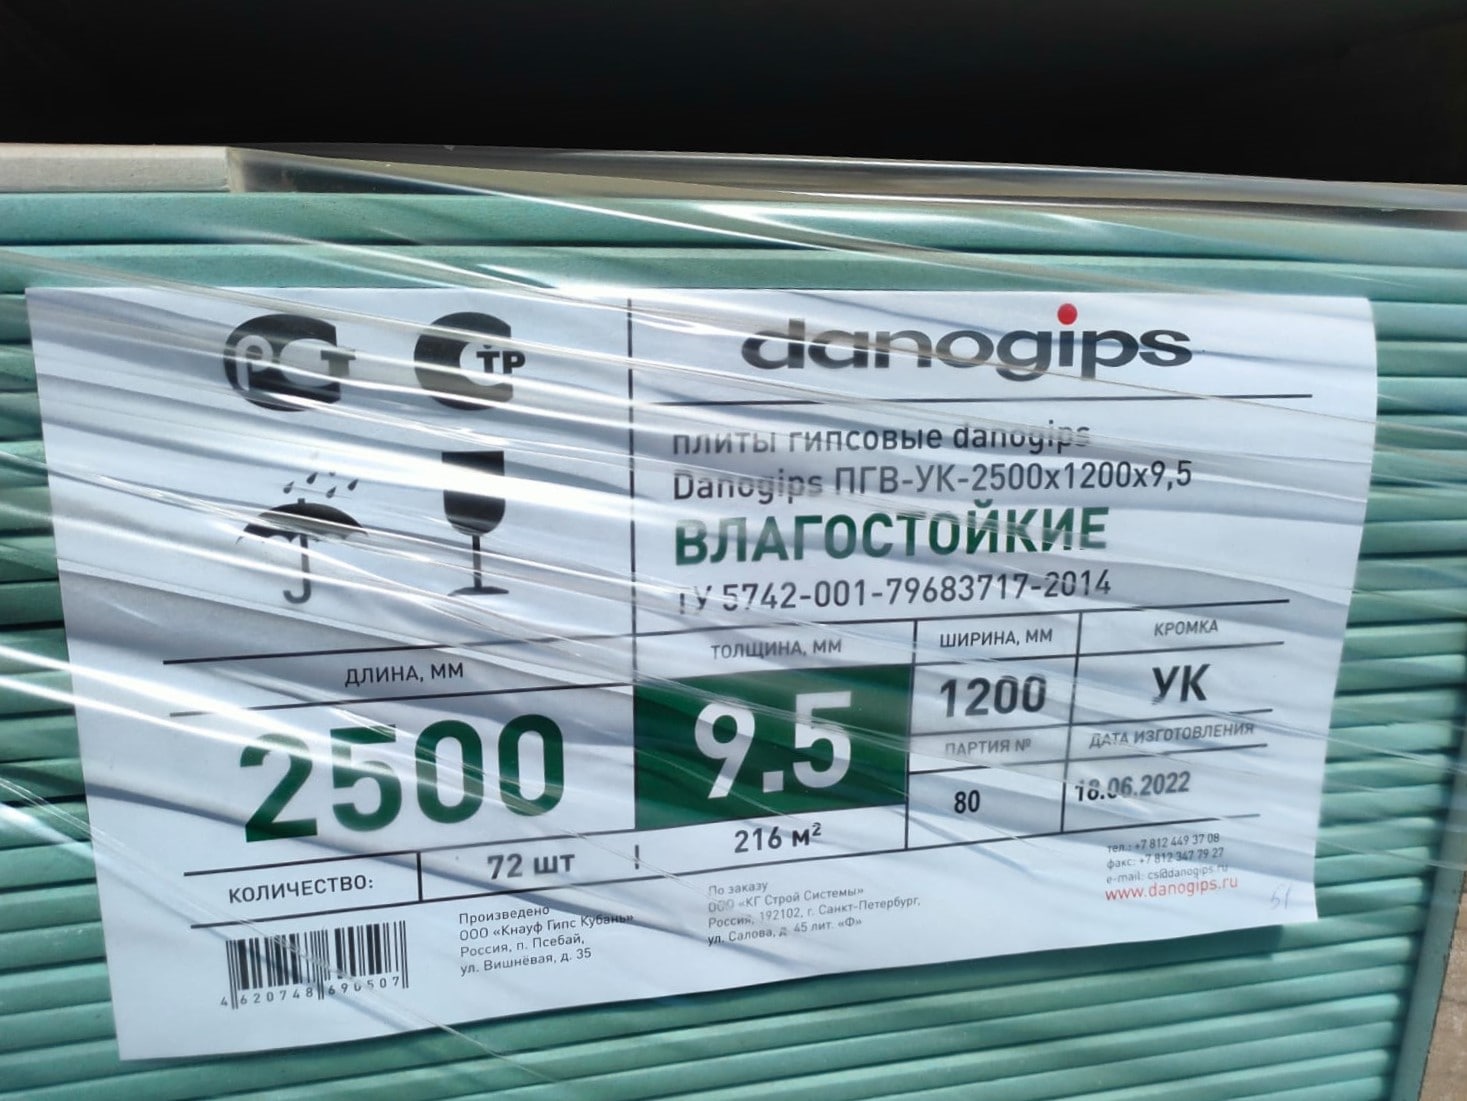 Гипсокартон влагостойкий (ГКЛВ) danogips / Даногипс ПГВ-УК 2500 х 1200 х 9,5 мм